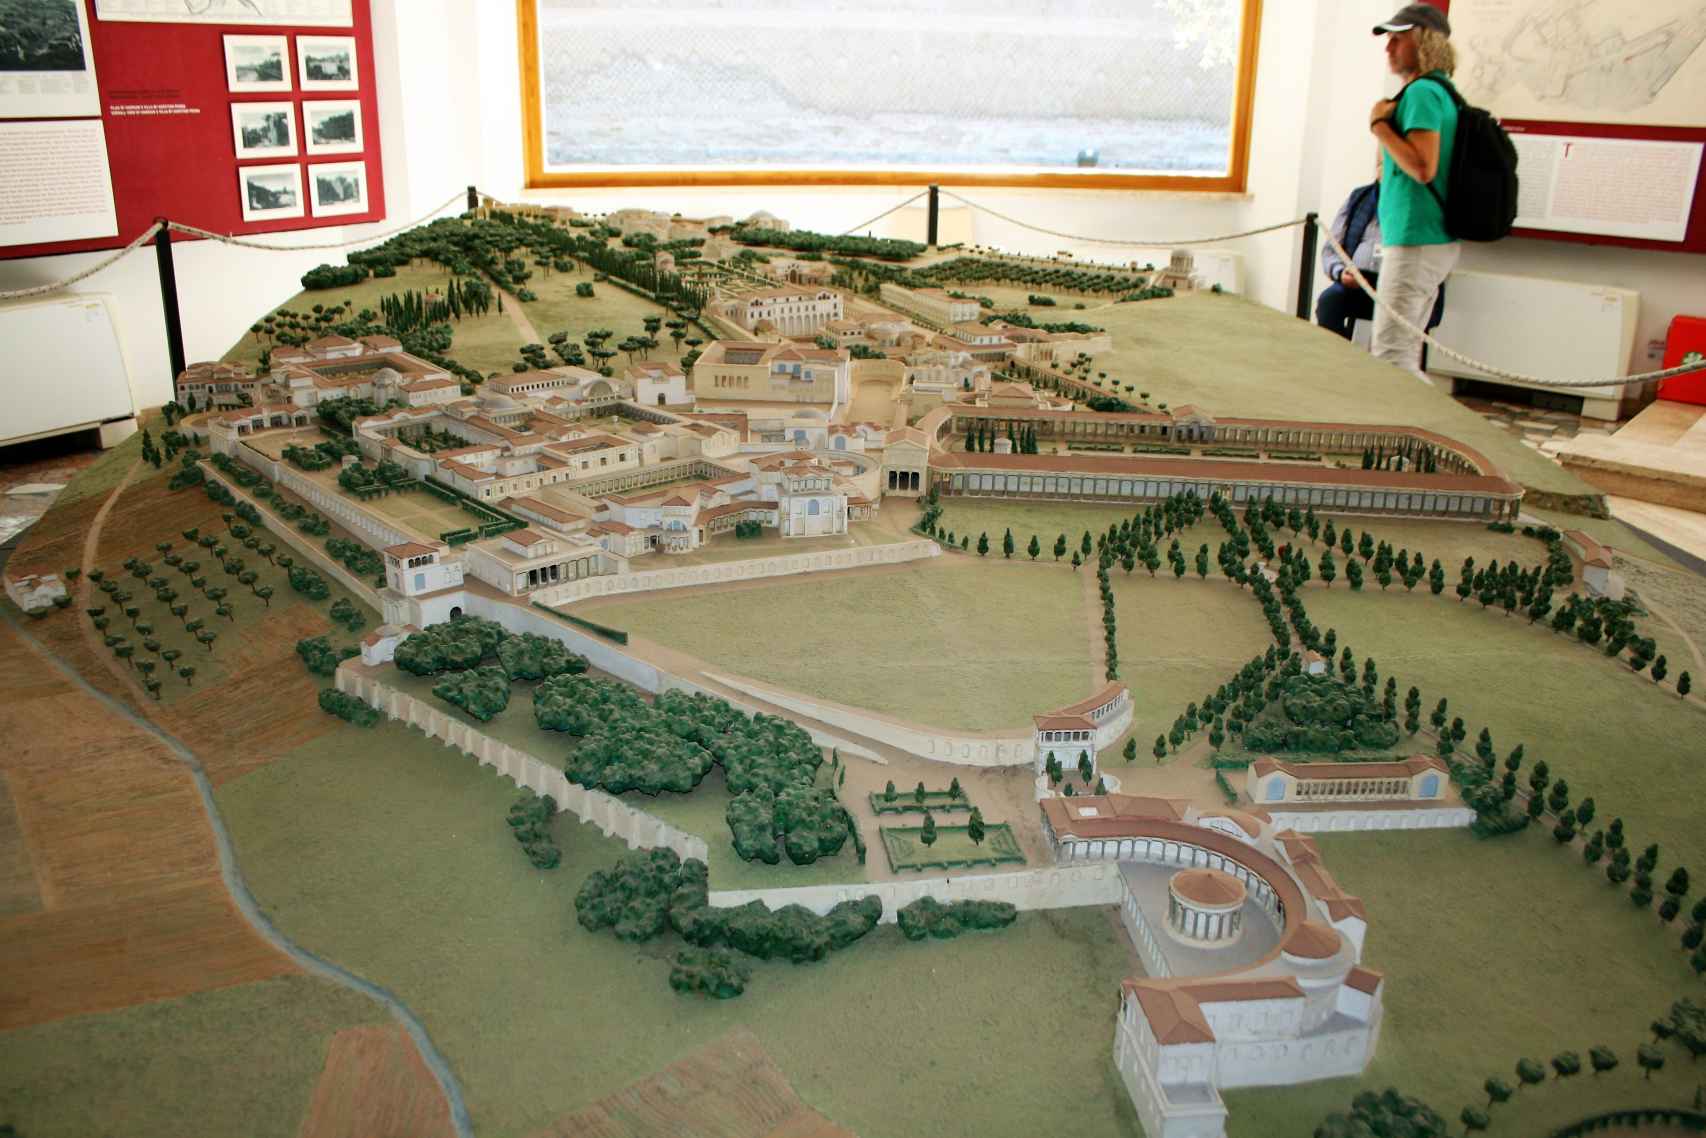 Maqueta del enorme conjunto palaciego de Villa Adriana, como era antes de su abandono.